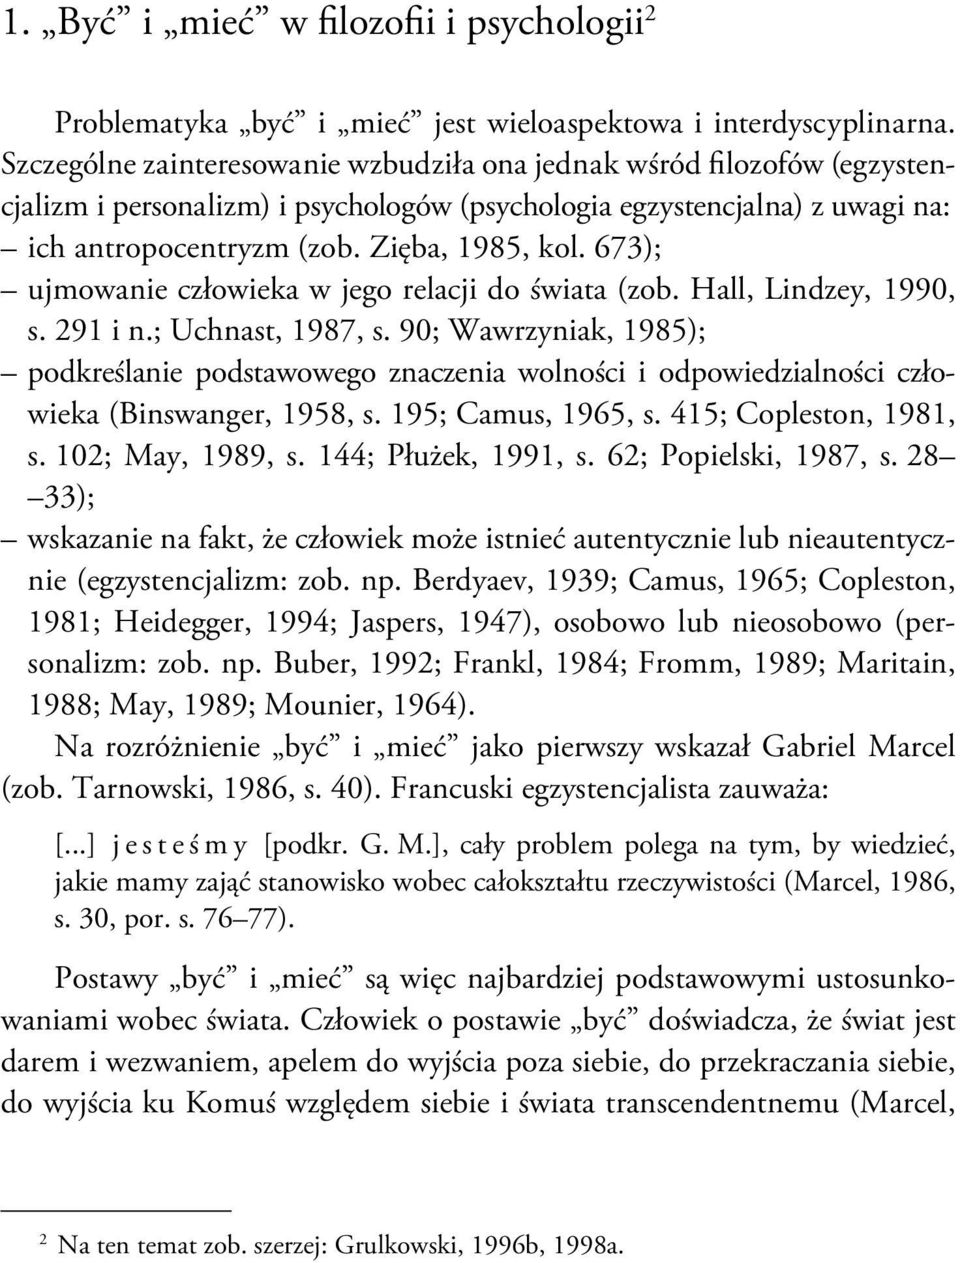 673); ujmowanie człowieka w jego relacji do świata (zob. Hall, Lindzey, 1990, s. 291 i n.; Uchnast, 1987, s.